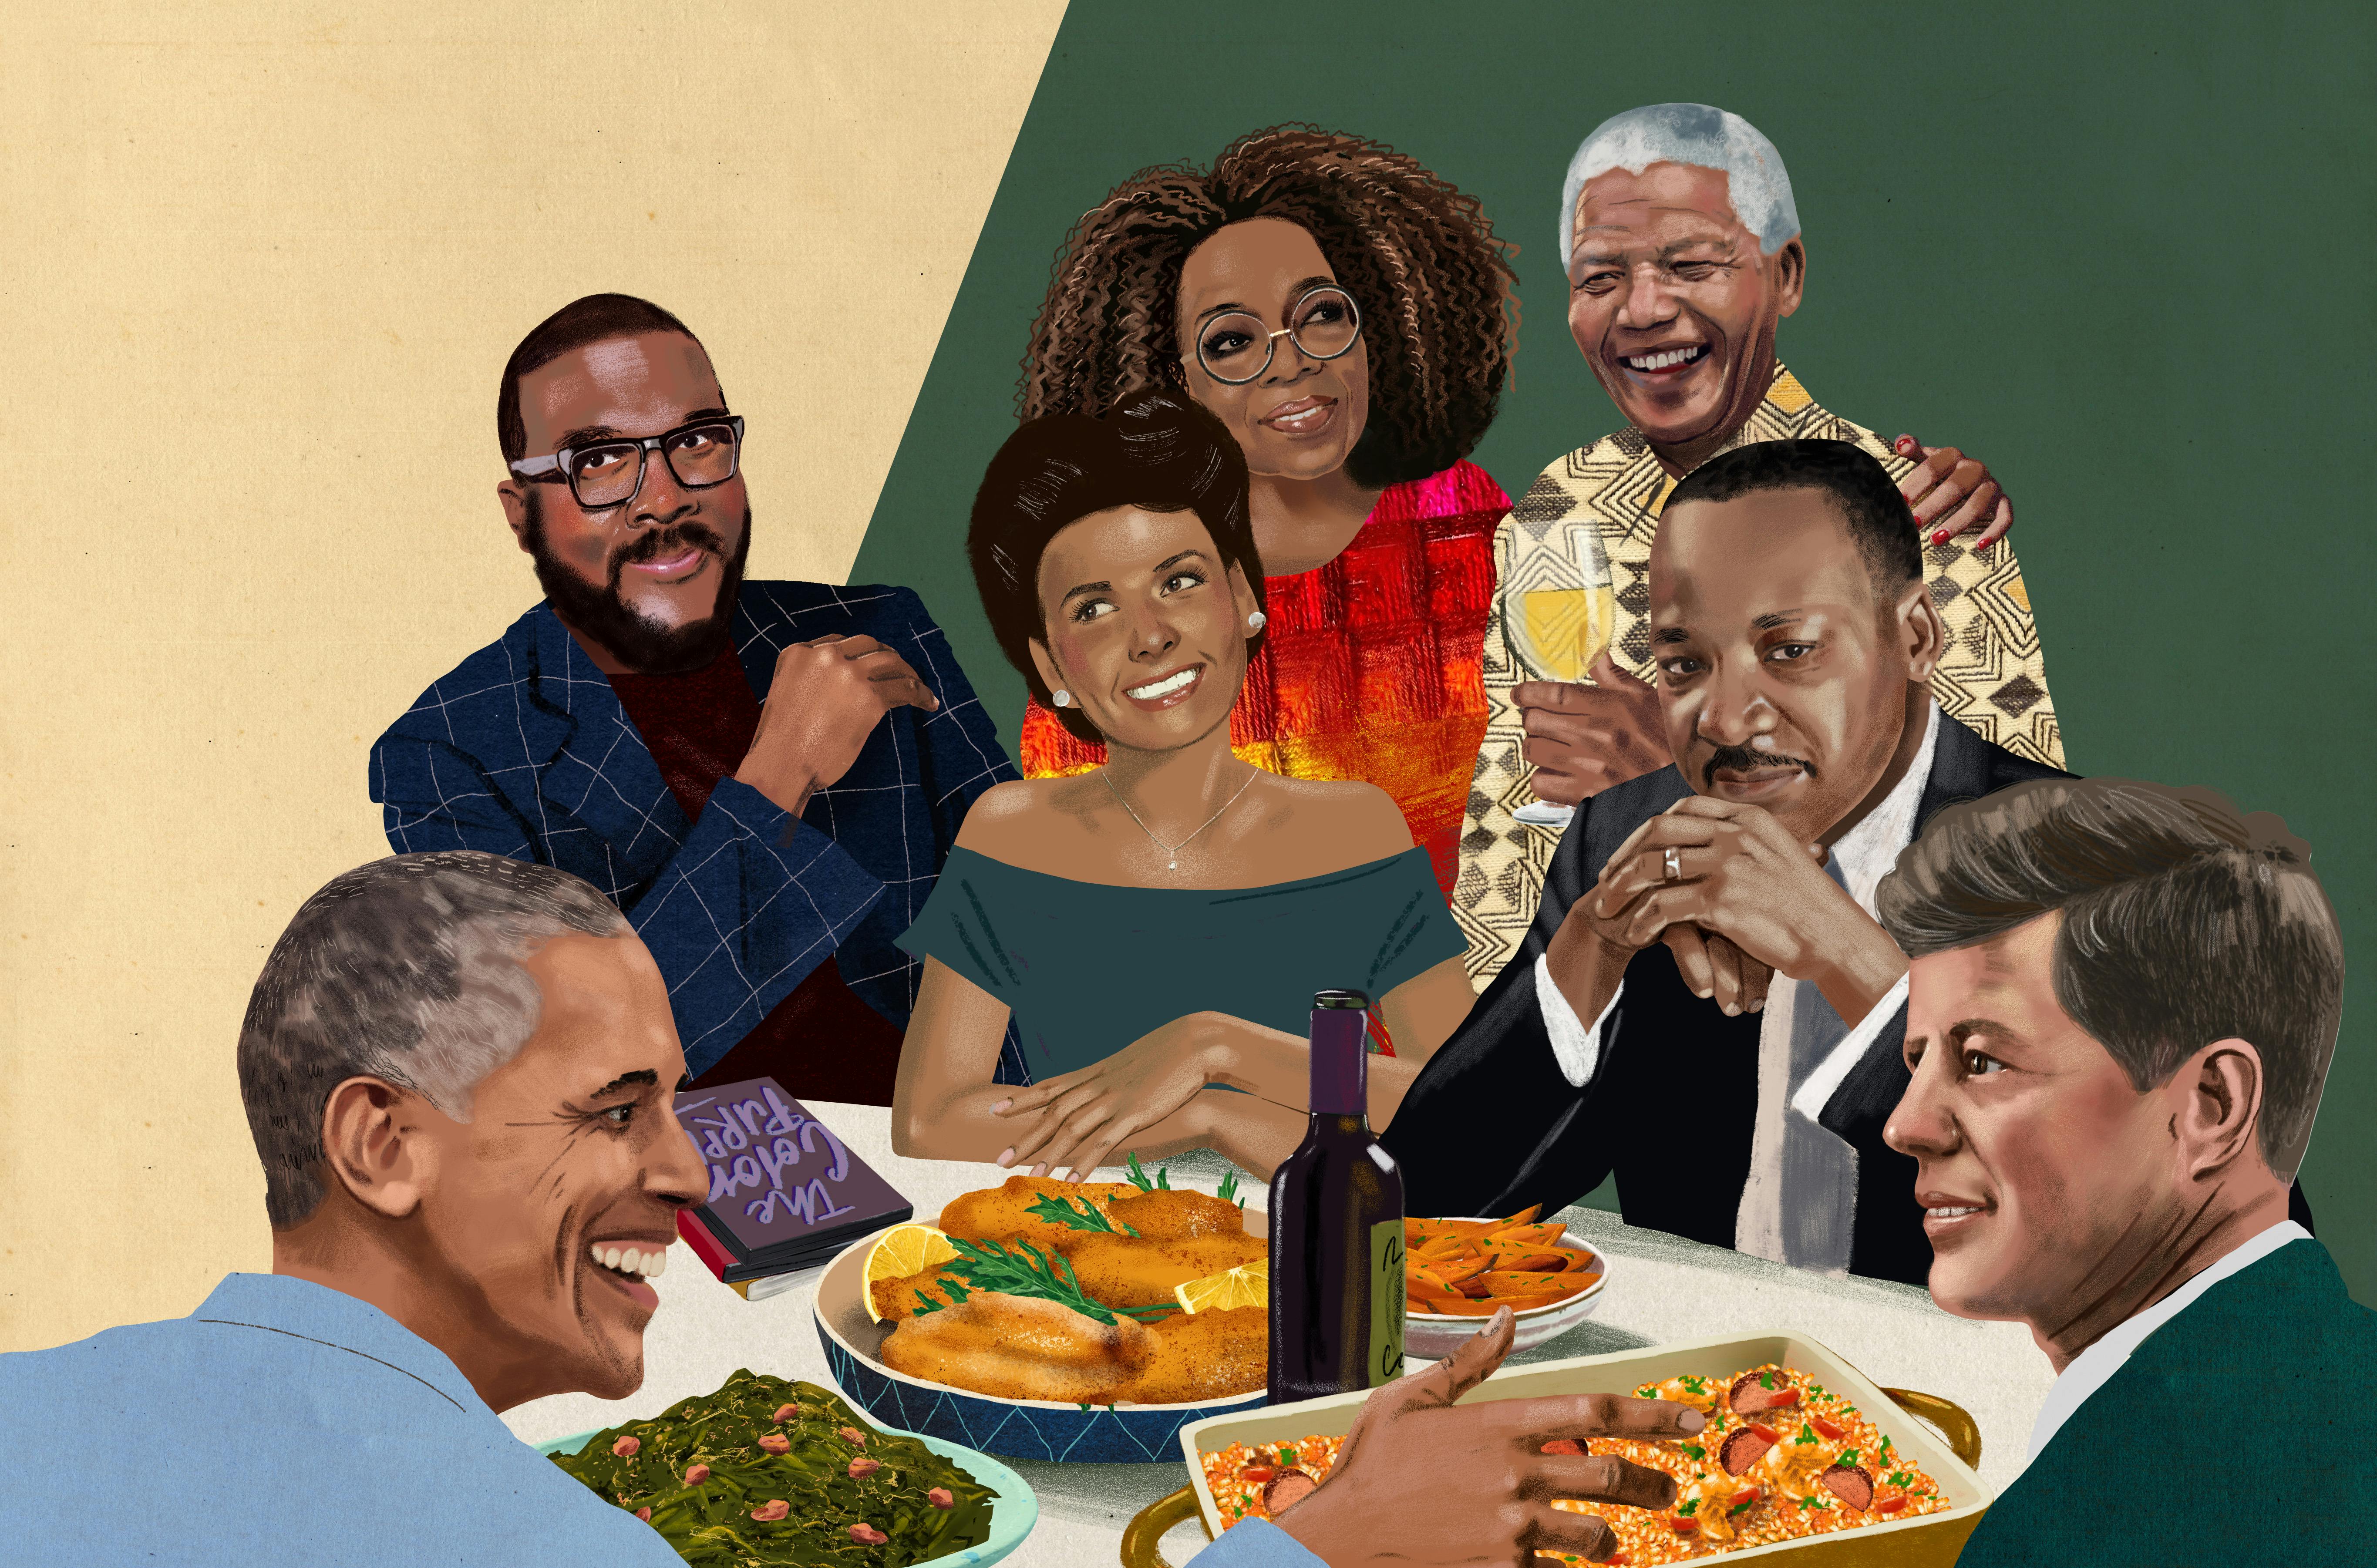 Tyler Perry's dream dinner party includes Barack Obama, MLK, JFK, Lena Horne, Oprah Winfrey.